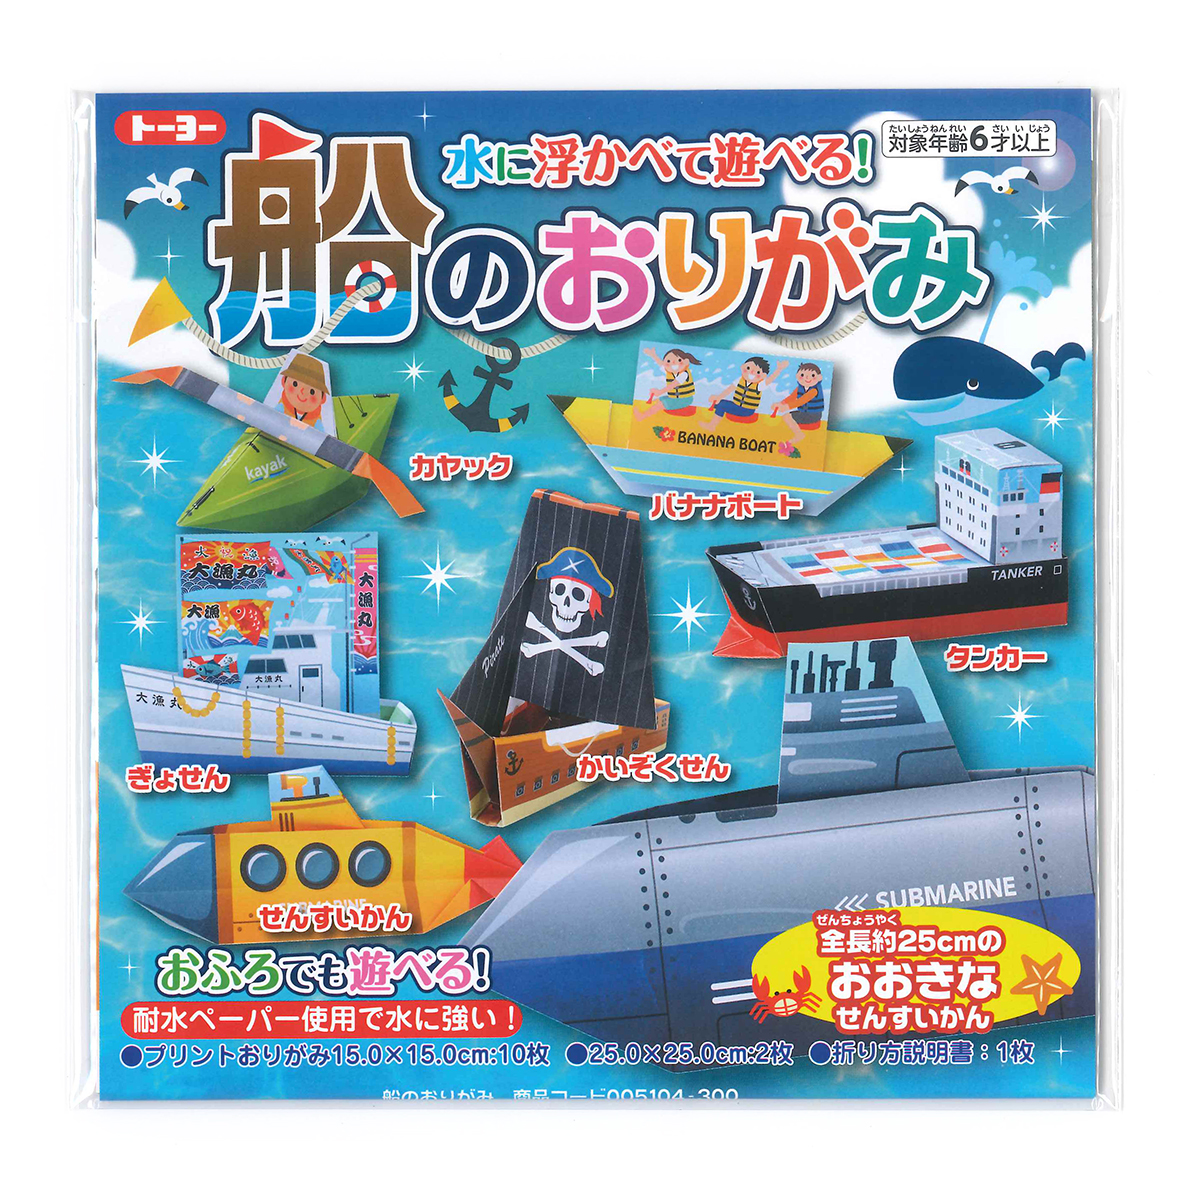 水に浮かべて遊べる 船のおりがみ 折り紙 通販サイト ブングショップドットコム